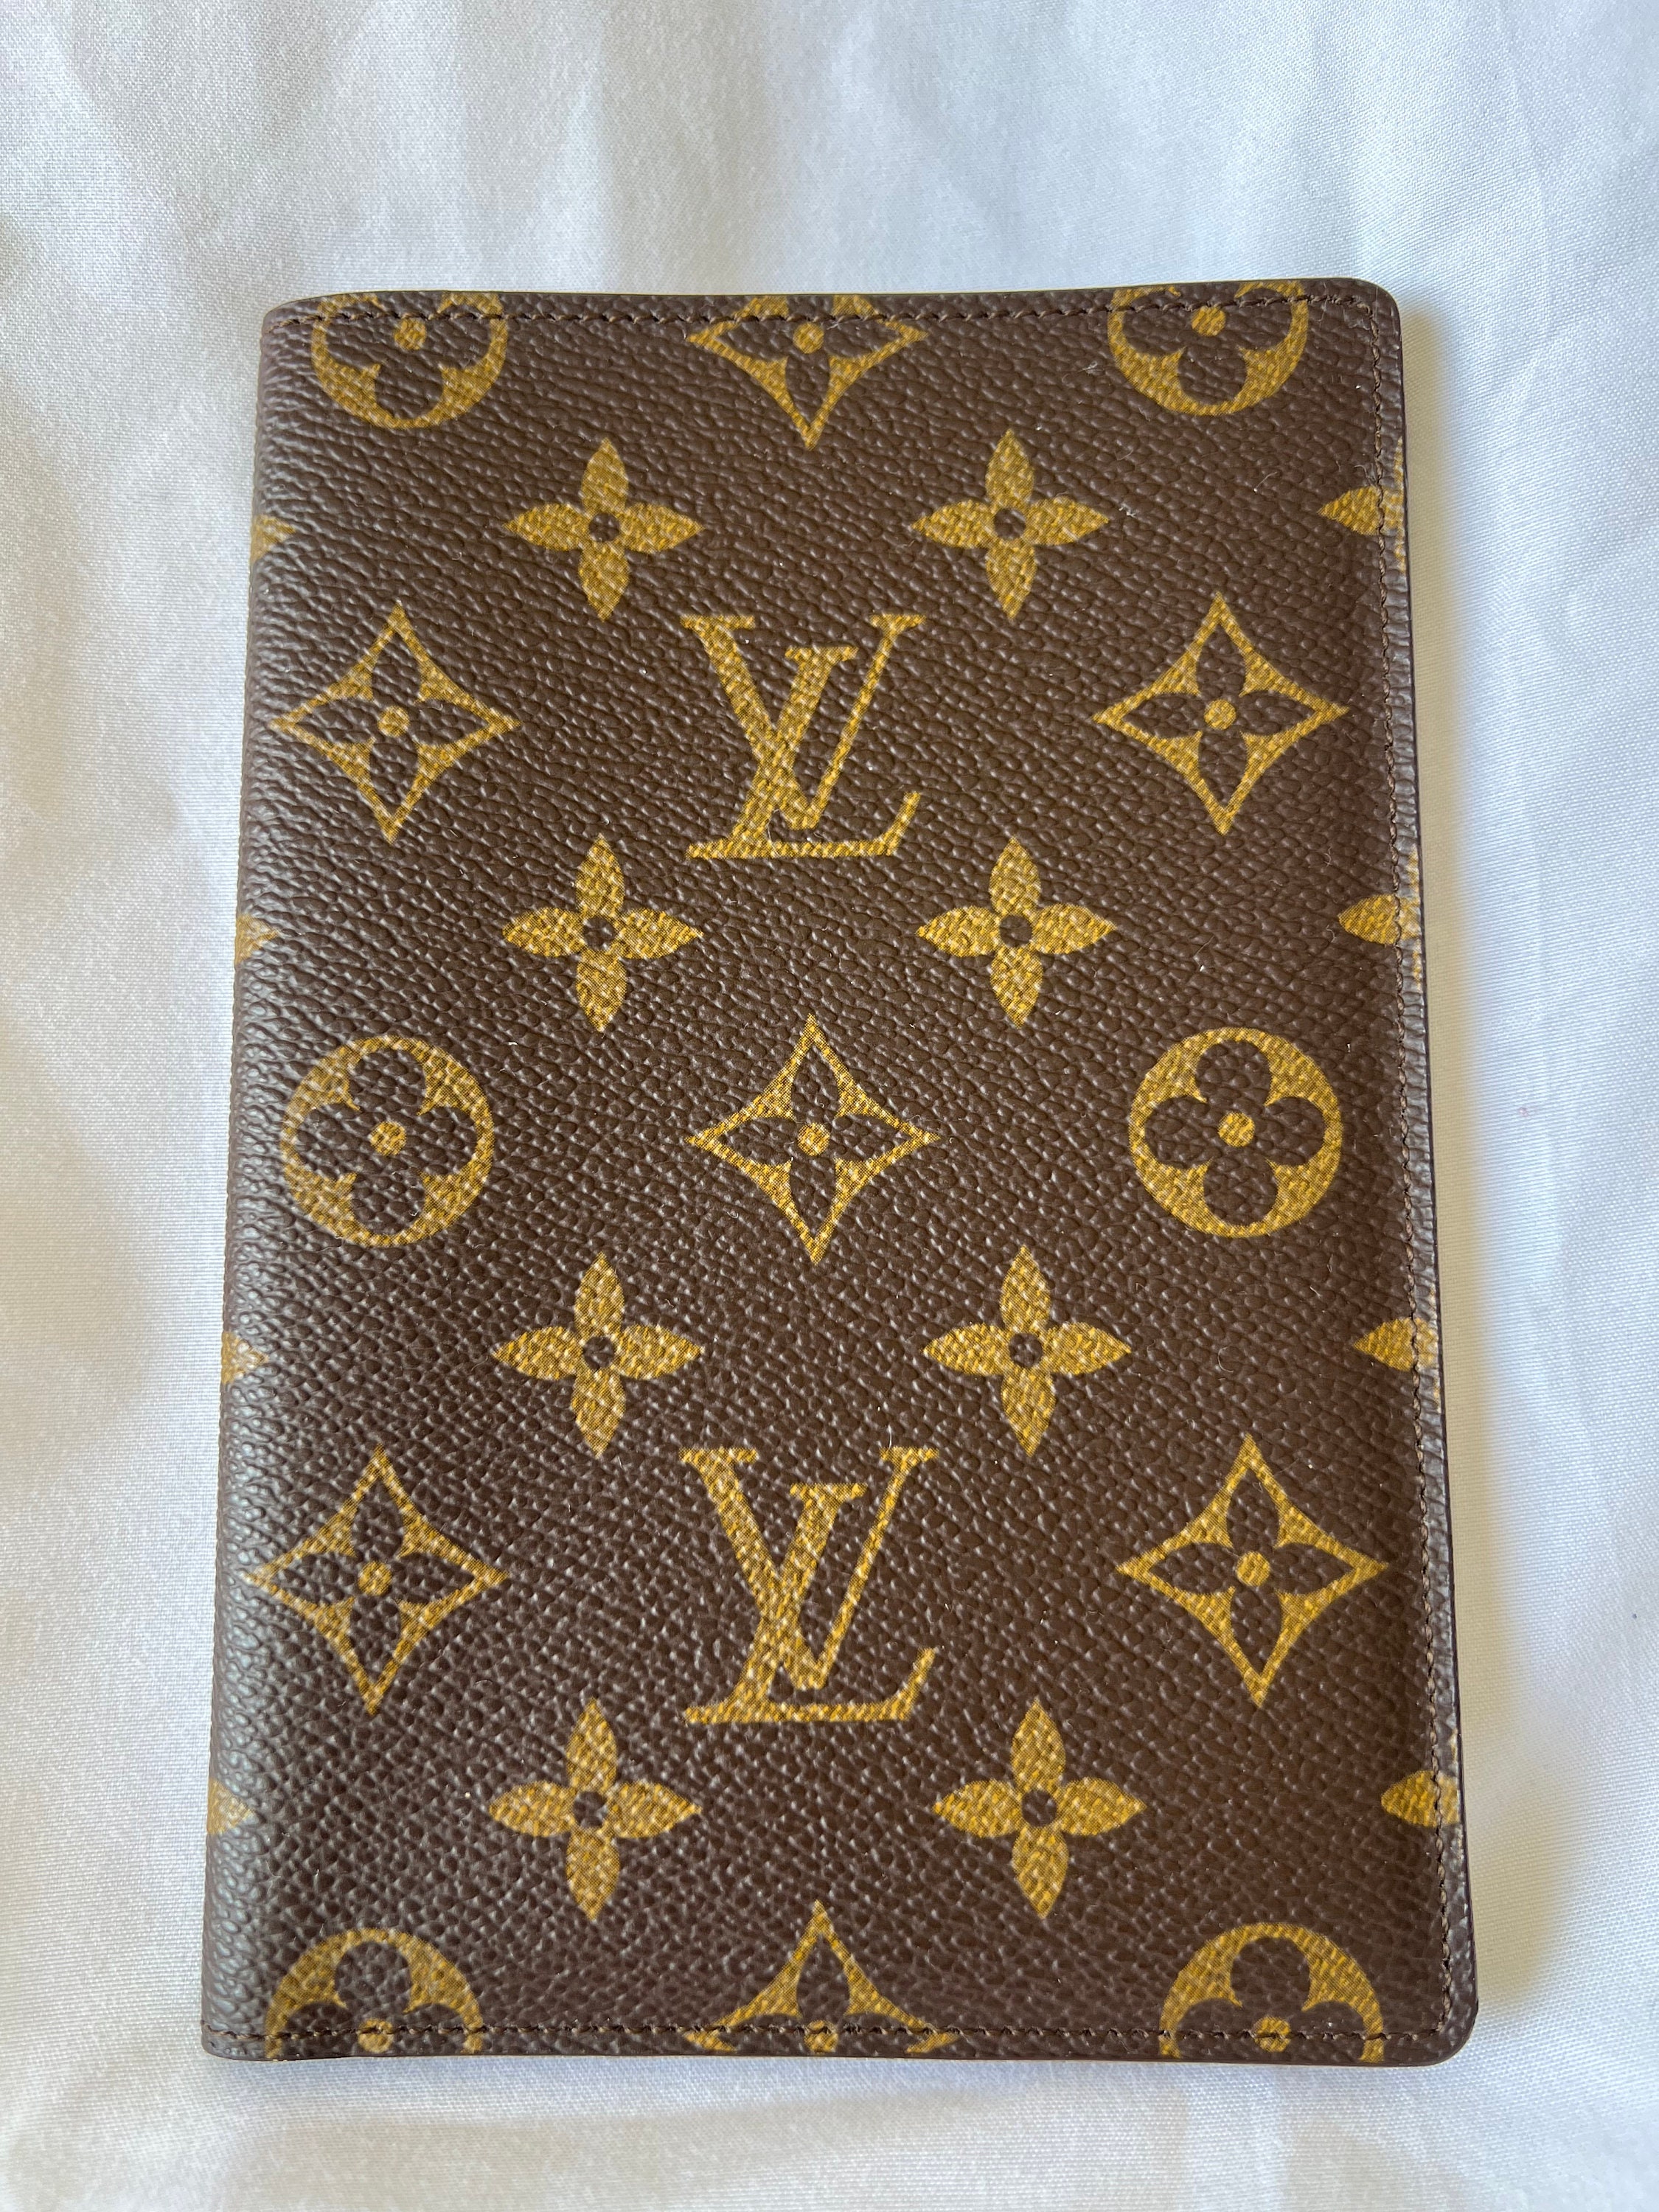 Authentic lv Louis Vuitton porte papier passport wallet, Women's